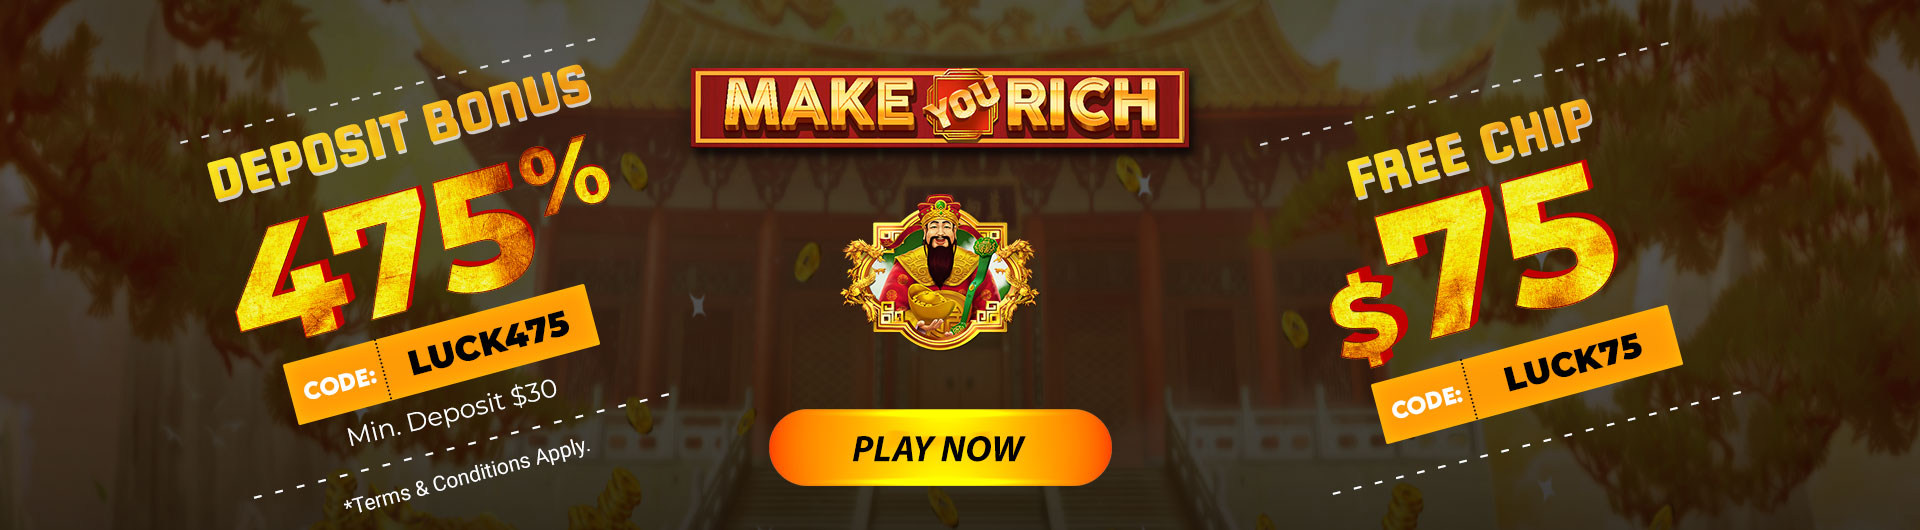 s7-make-you-rich